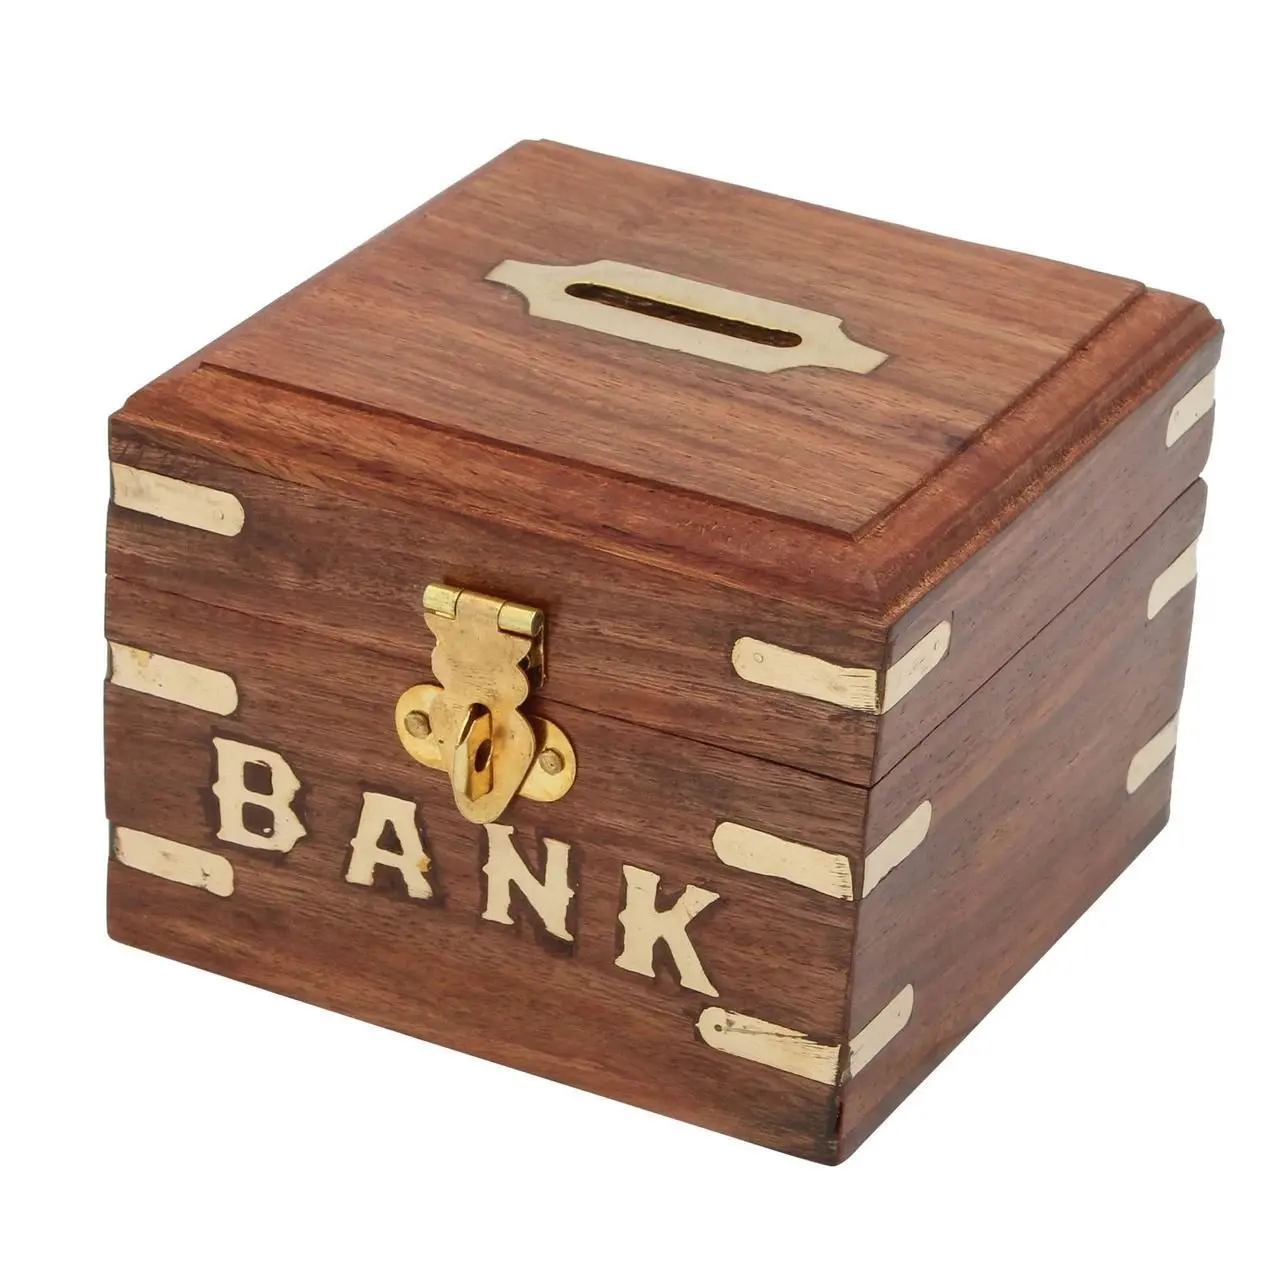 1 money box. Печь копилка. Money Box. Moneybox. Копилка прямоугольная дизайн.